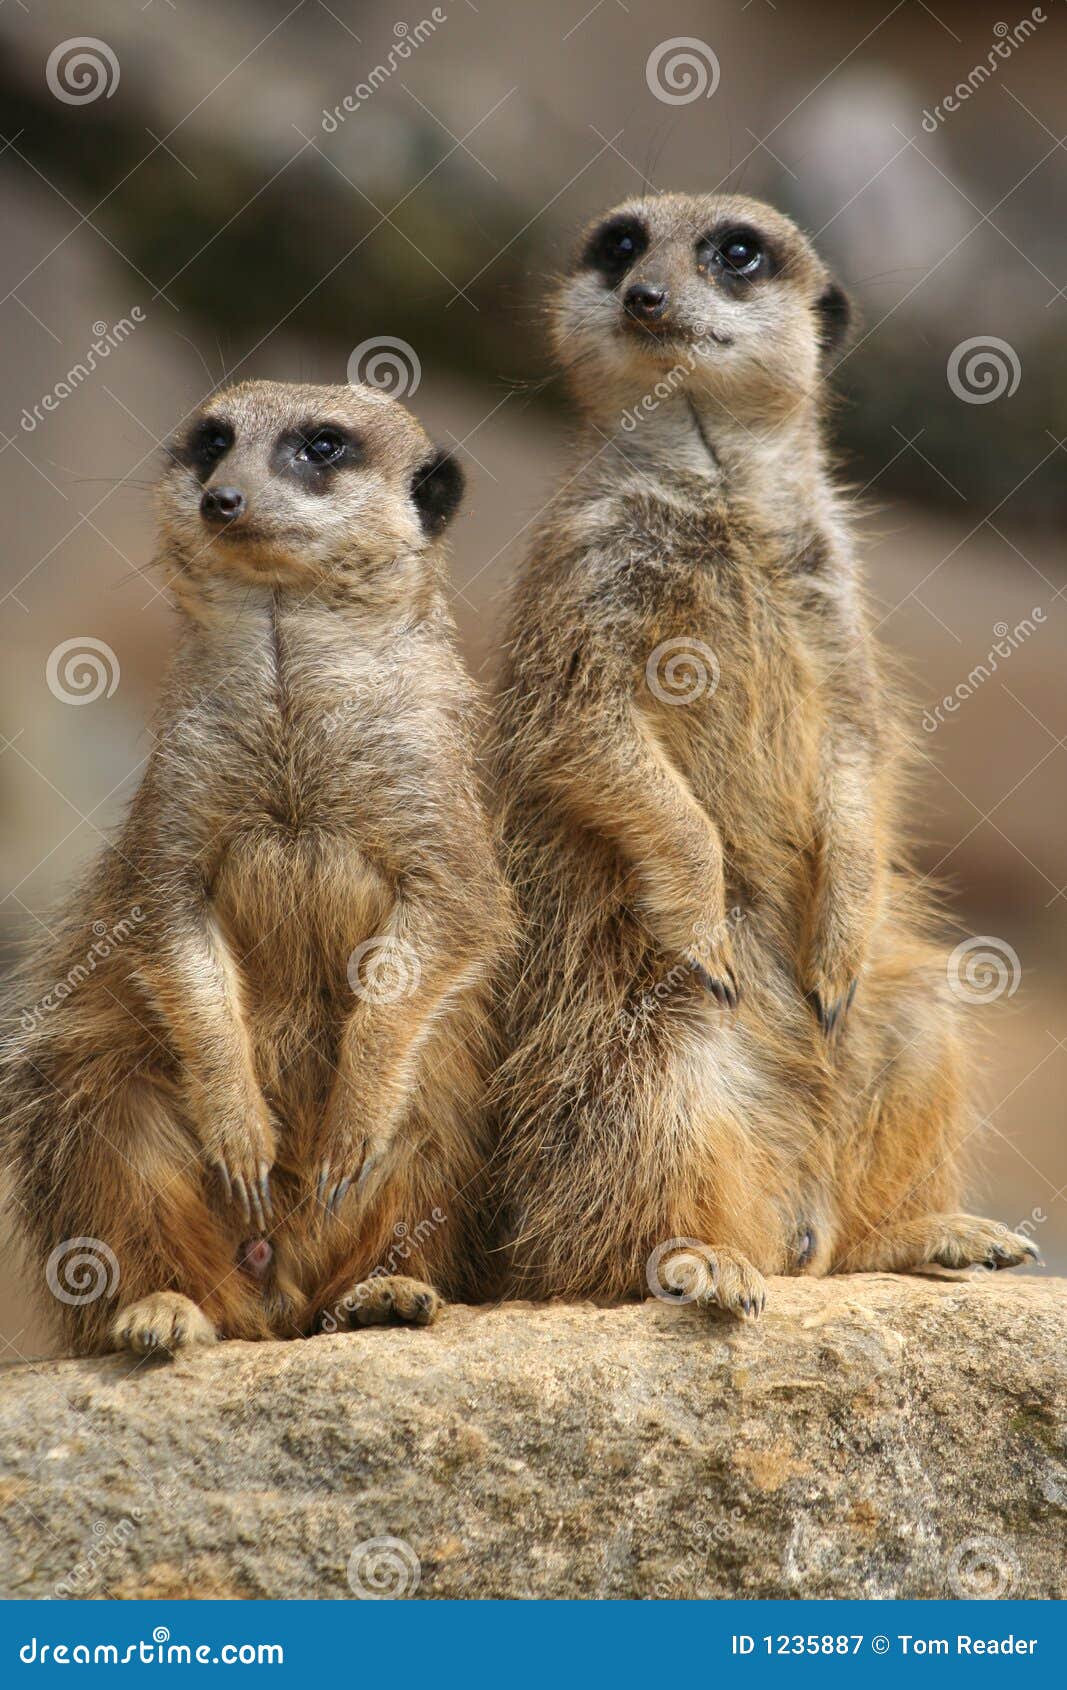 meerkats on lookout